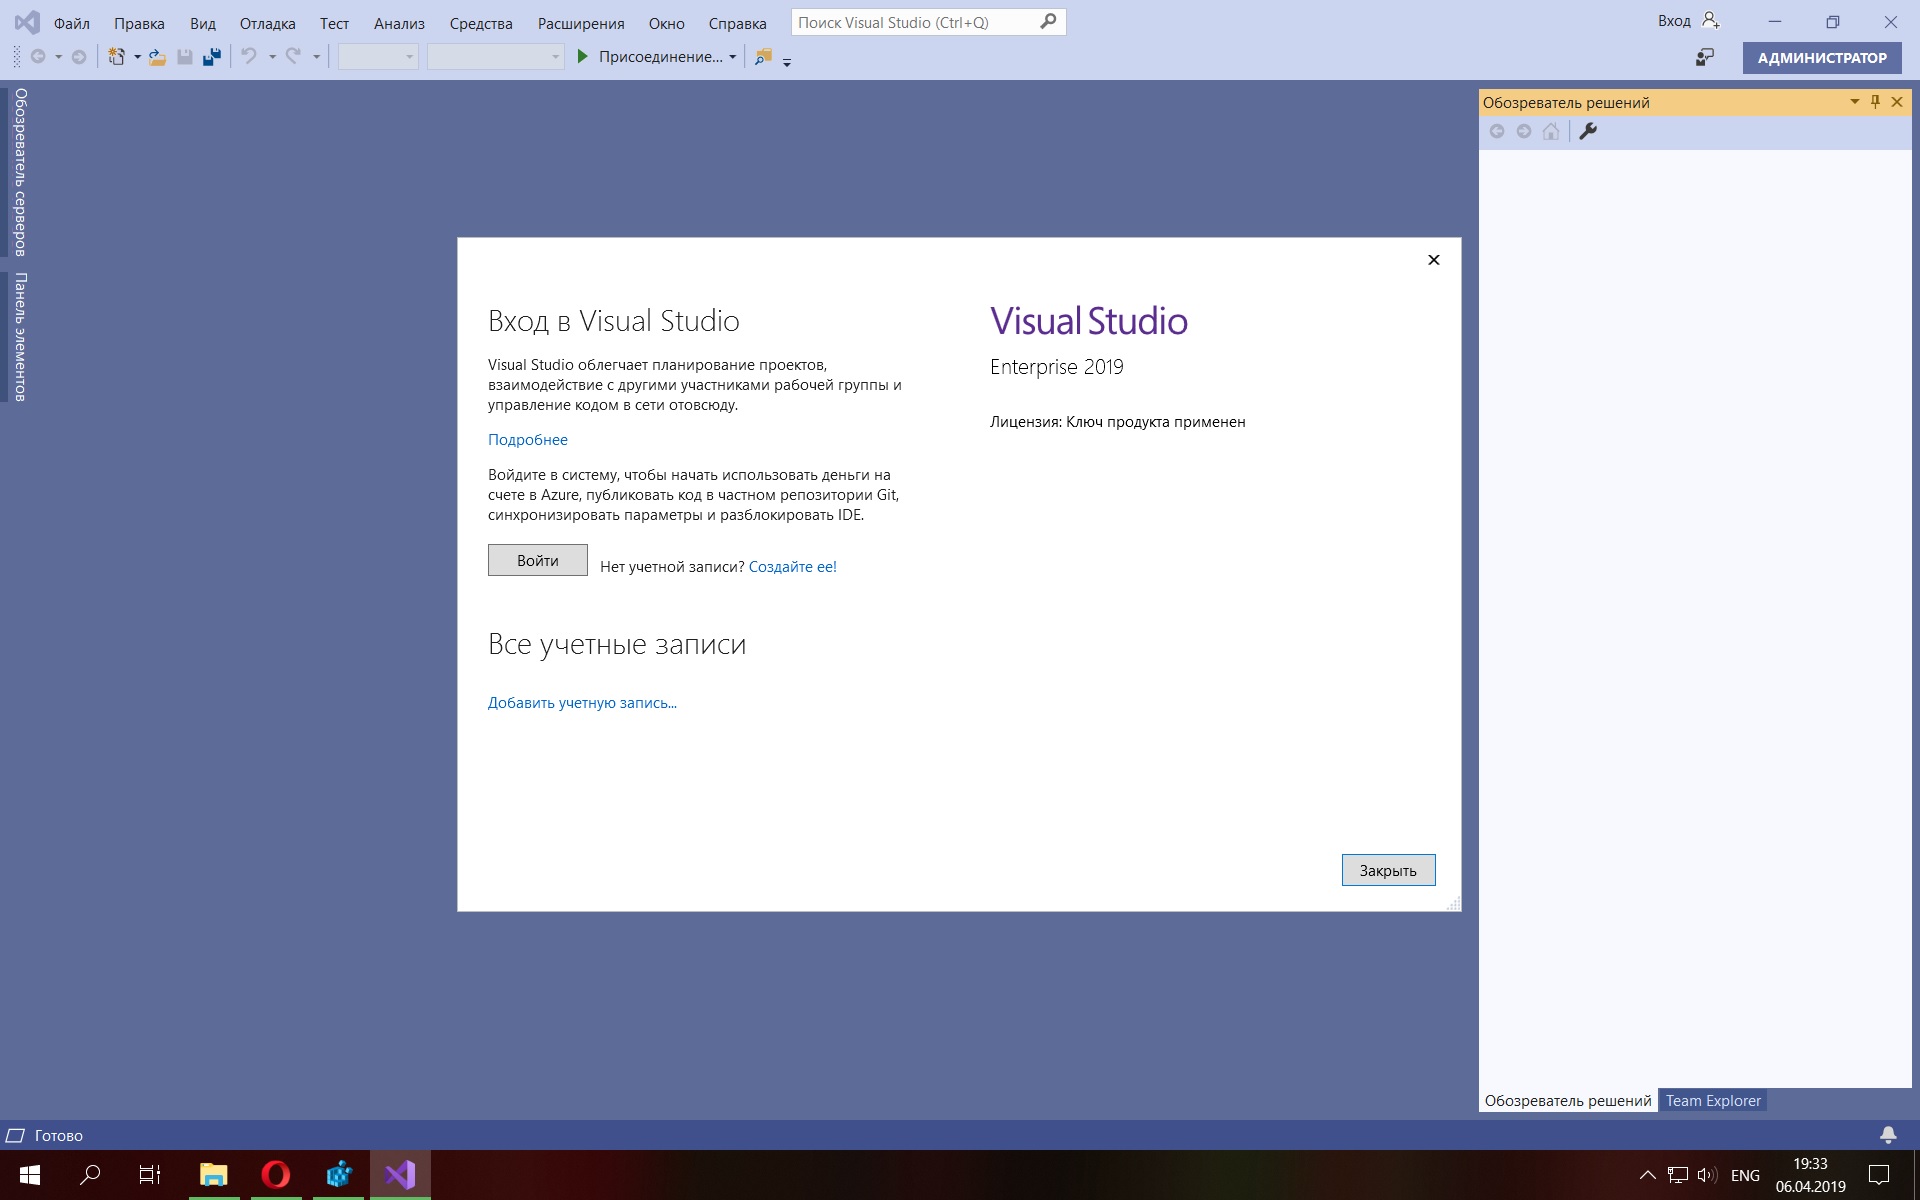 Обозреватель решений Visual Studio. Вход в визуал студио окно. Как расширить окно программы на весь экран.